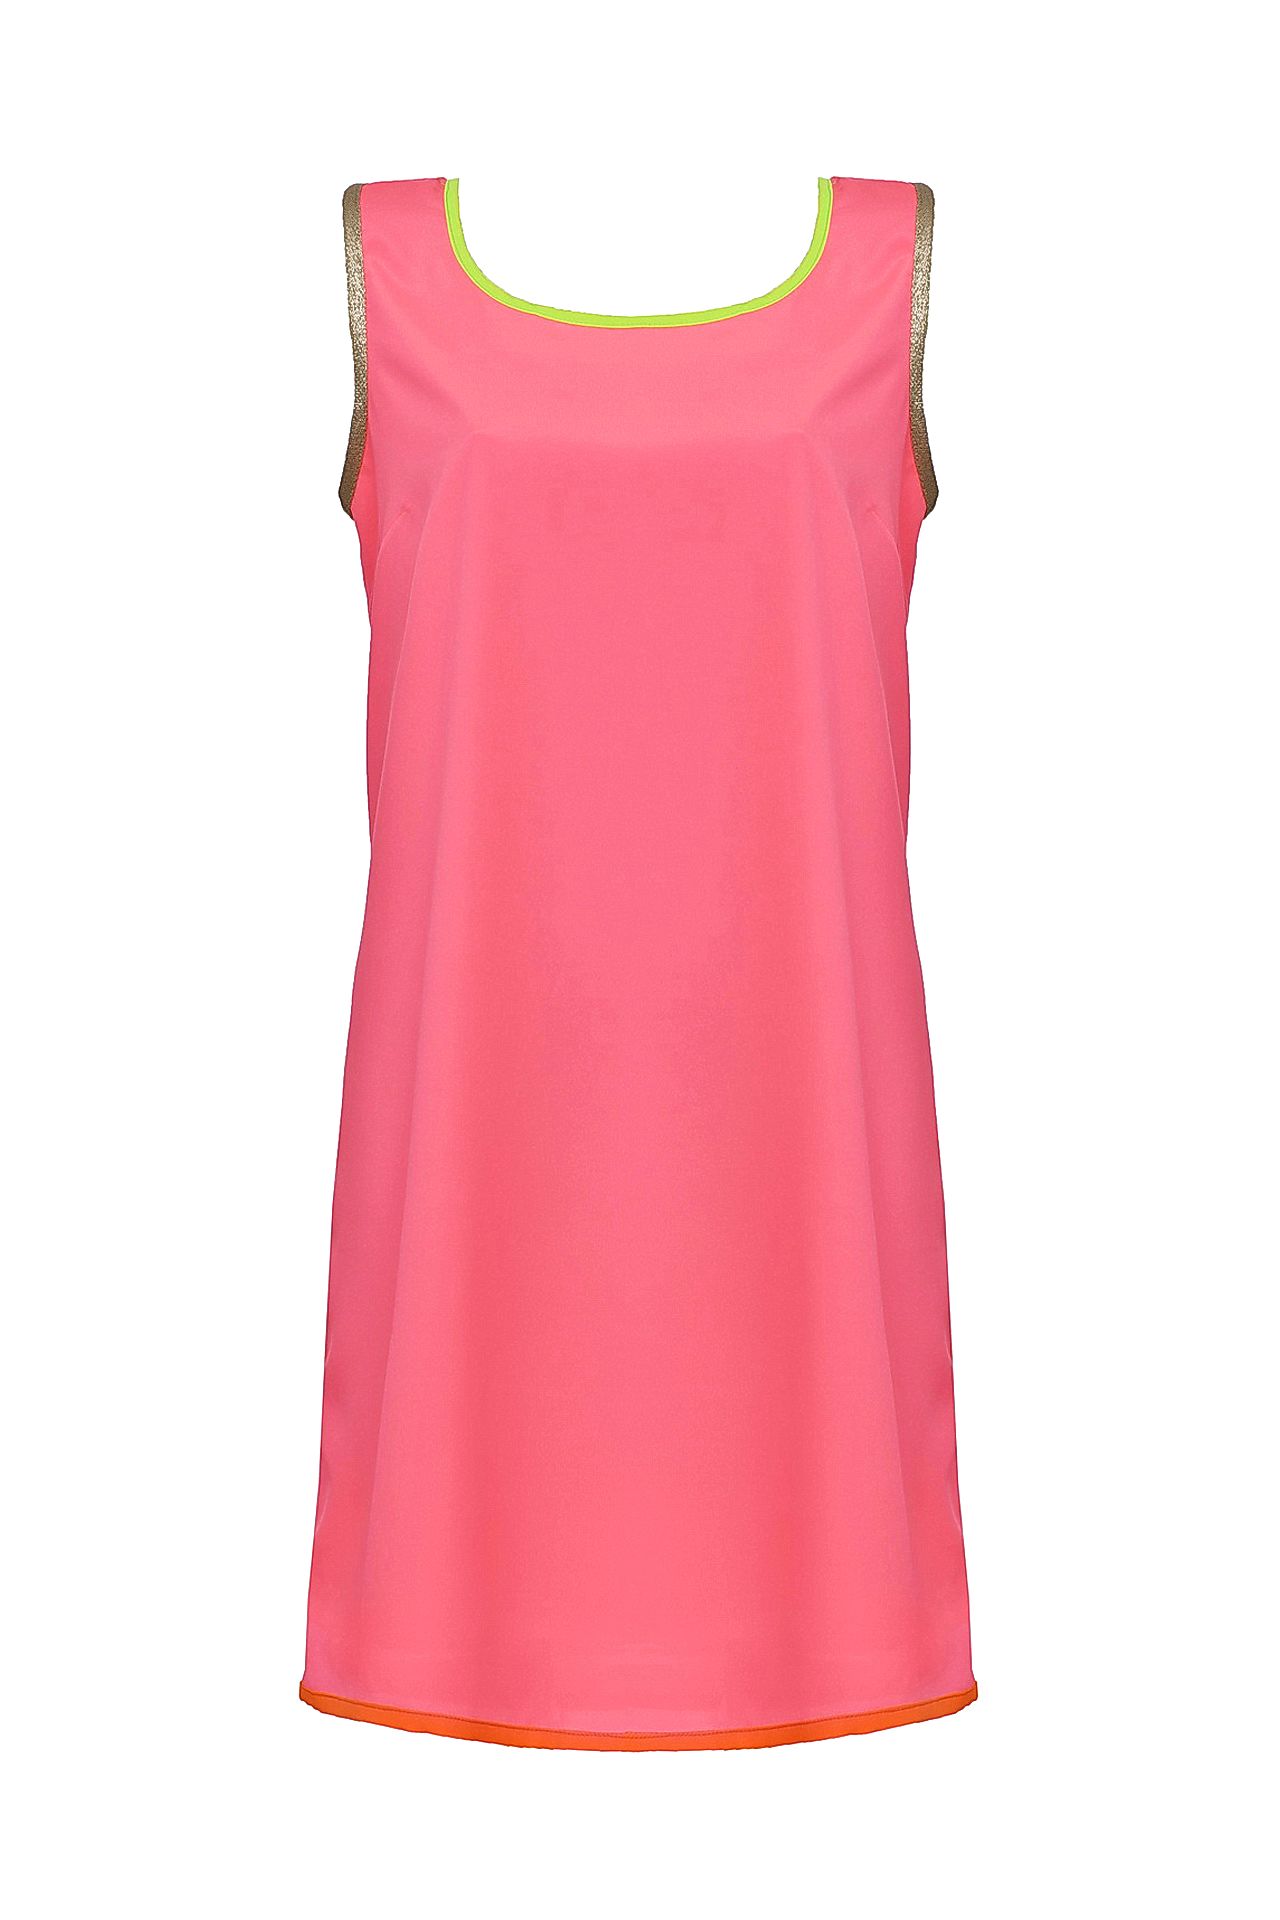 Одежда женская Платье ELLA LUNA (MONDAY/14.2). Купить за 9730 руб.